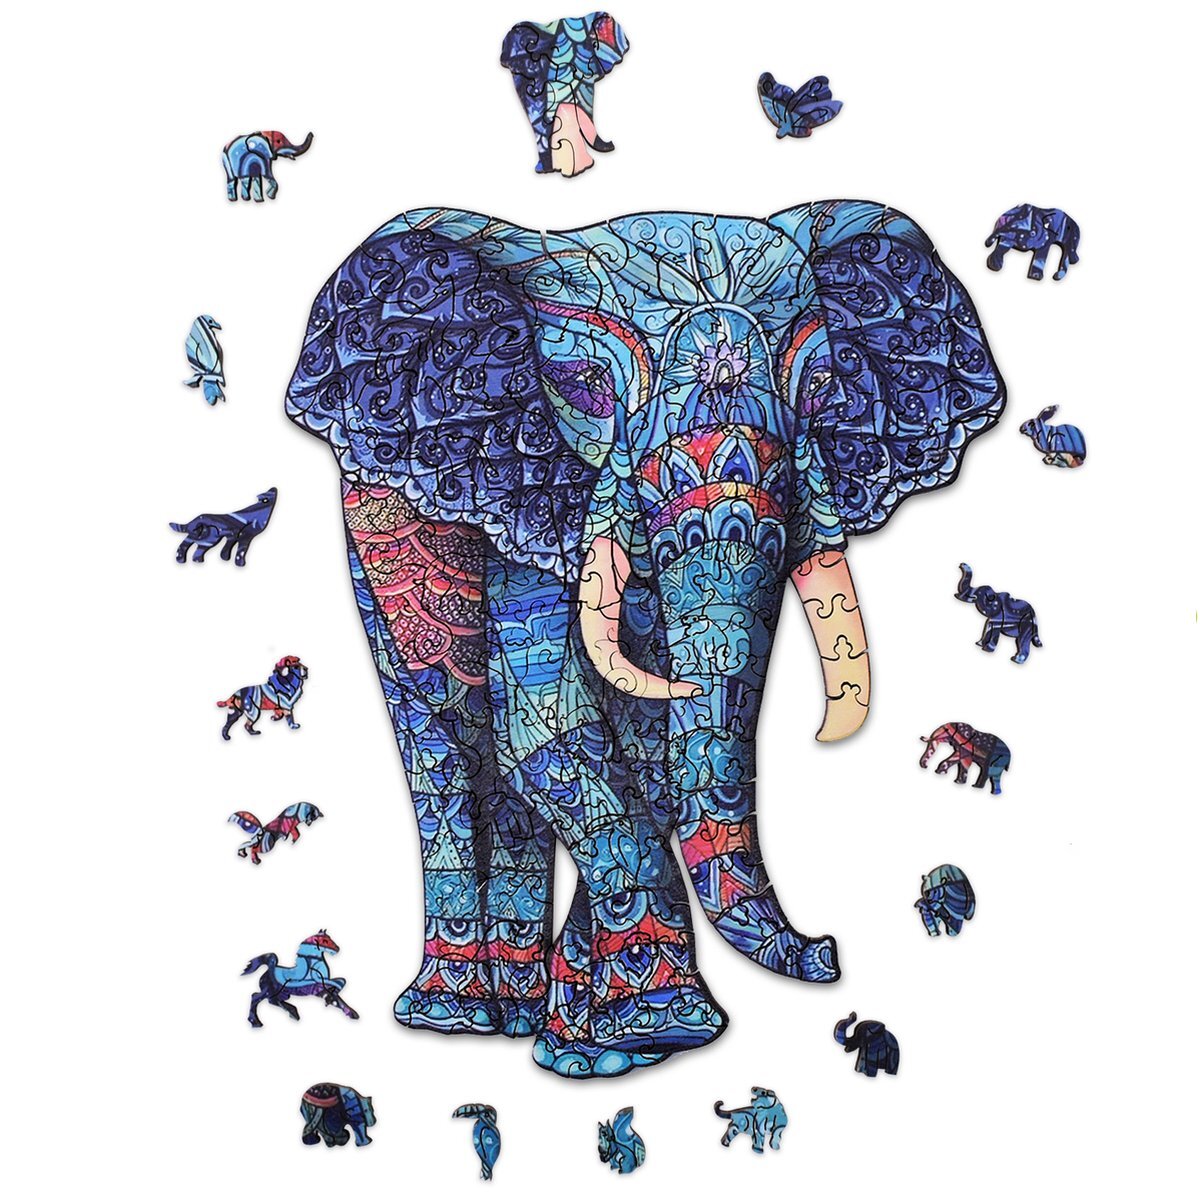 Acropaq Houten puzzel olifant - 200 Stukjes, A3 formaat 420 x 297 mm, Puzzelstukjes in dierenvormen, Gemaakt van hoogwaardig hout - Houten puzzel volwassenen, Puzzel, Puzzel volwassenen, Kinderpuzzel